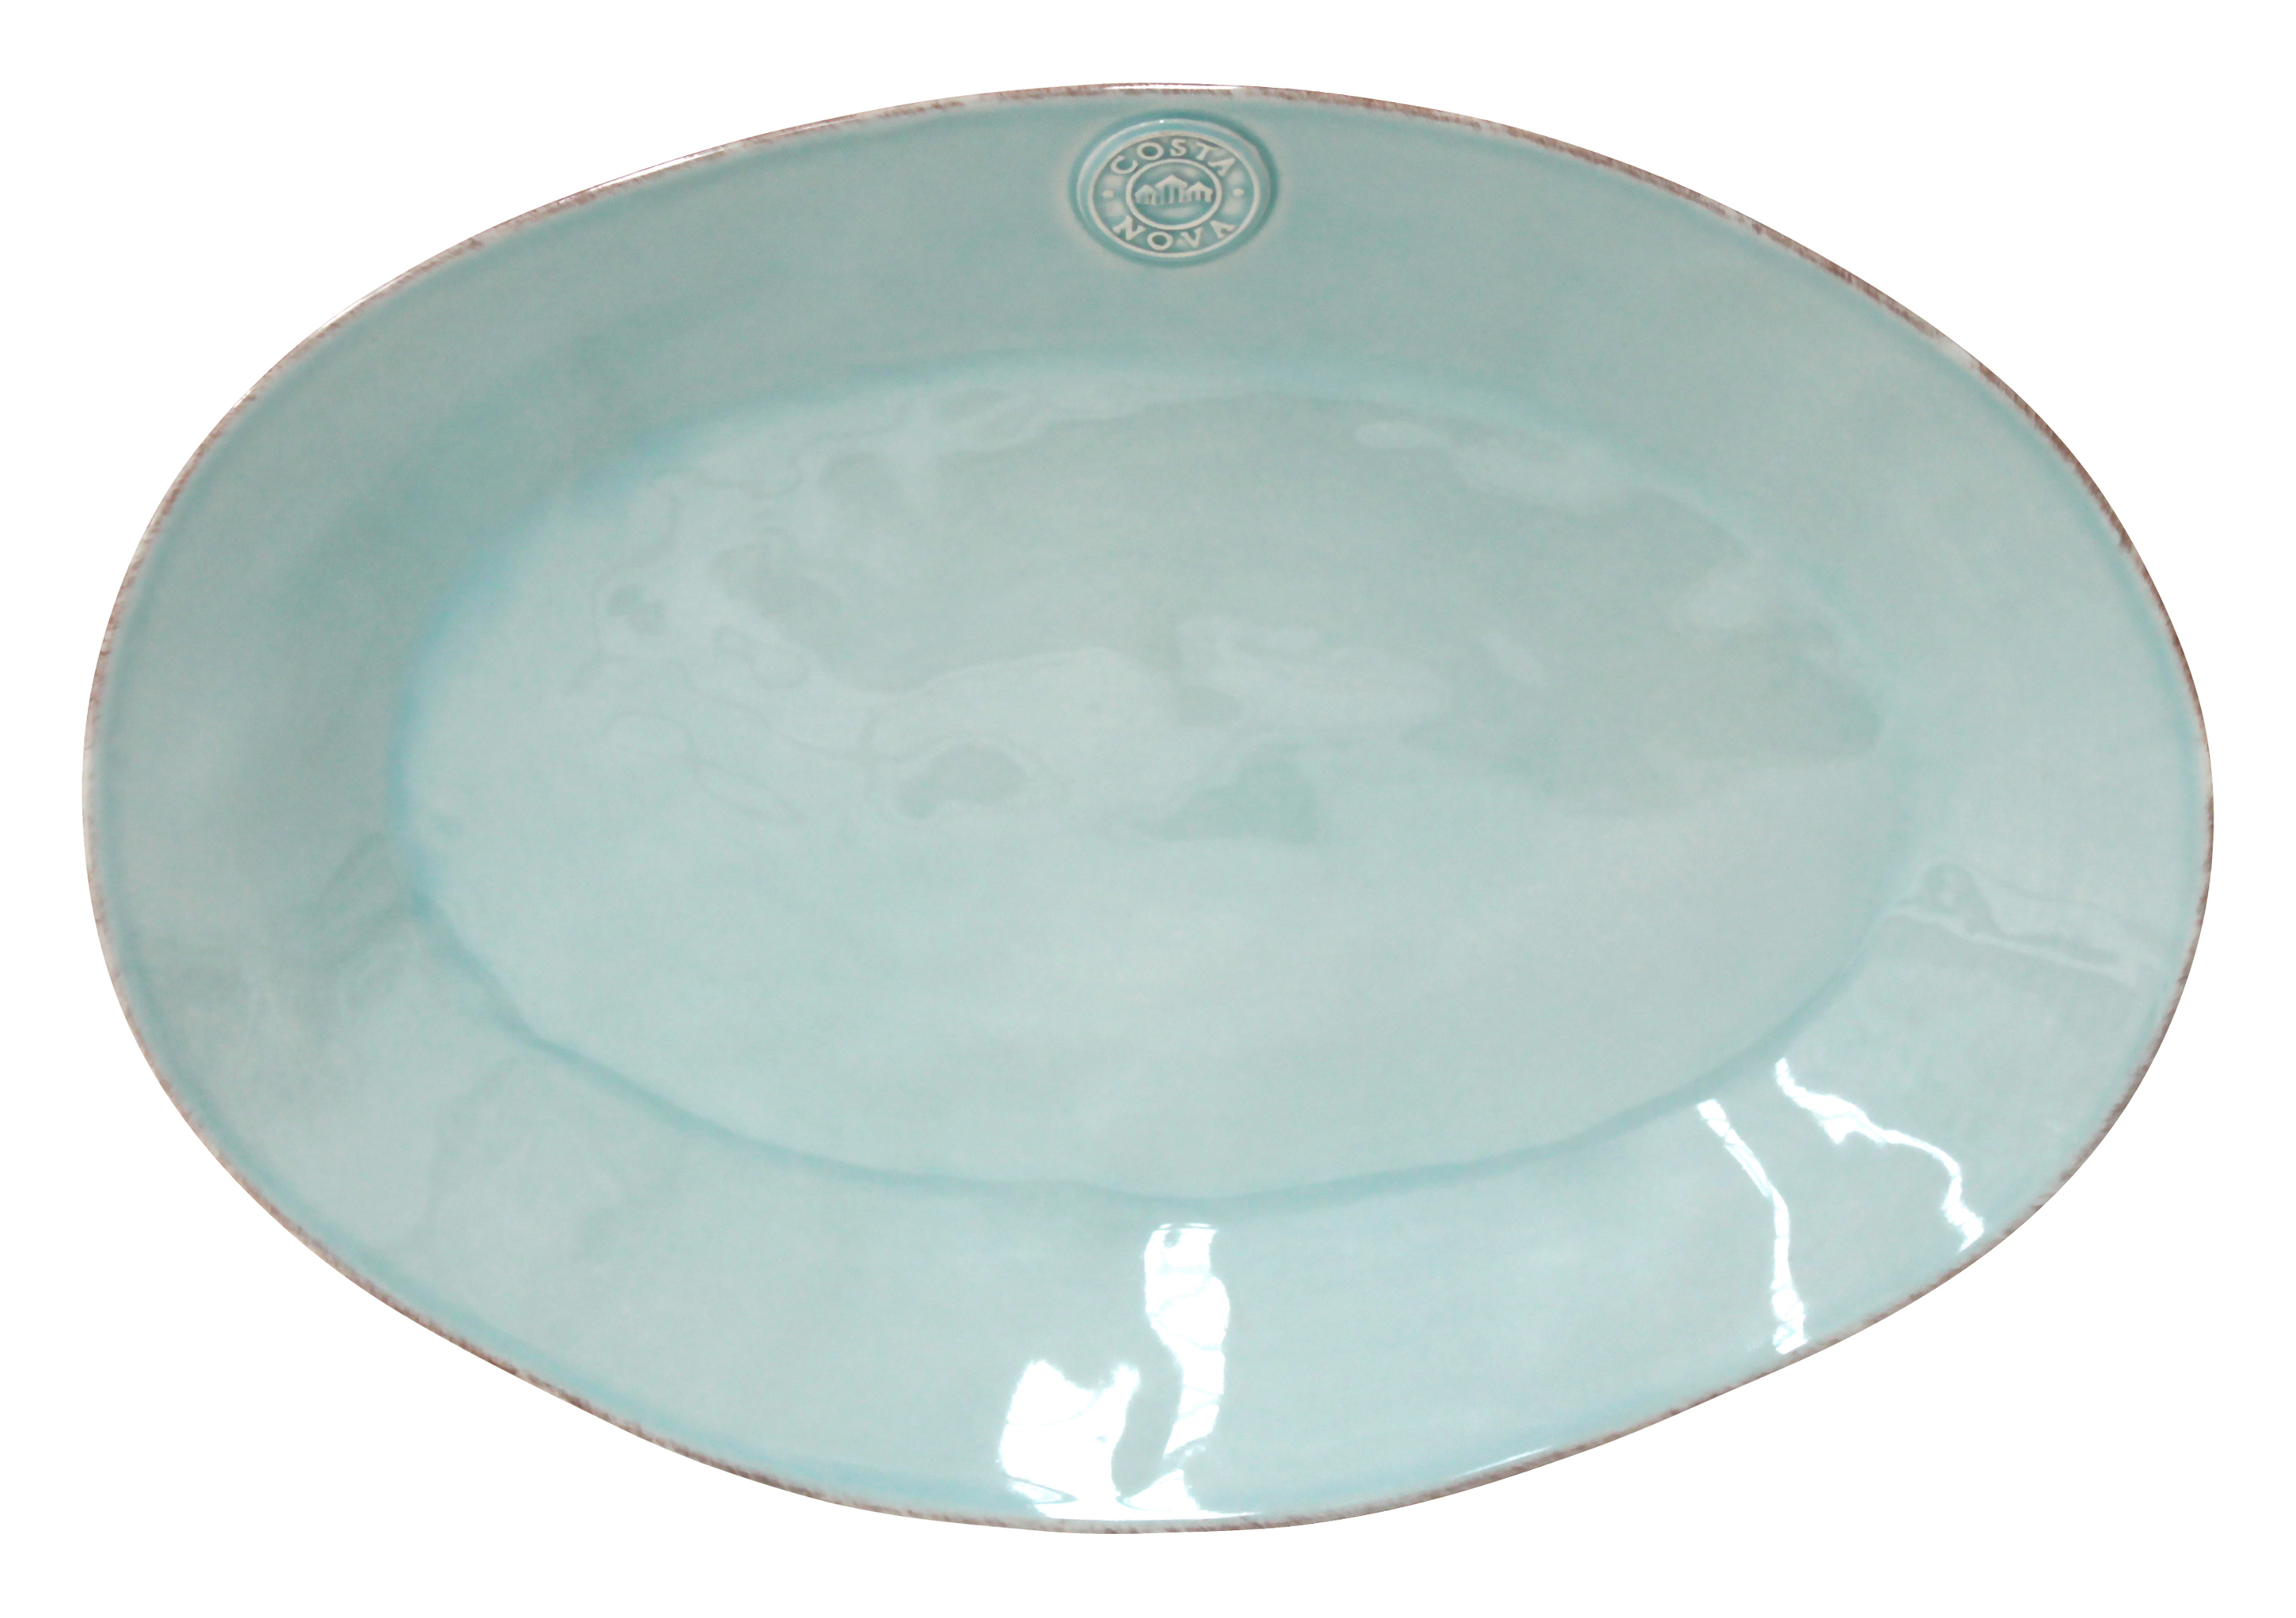 Nova Turquoise Oval Platter Large 40cm Gift